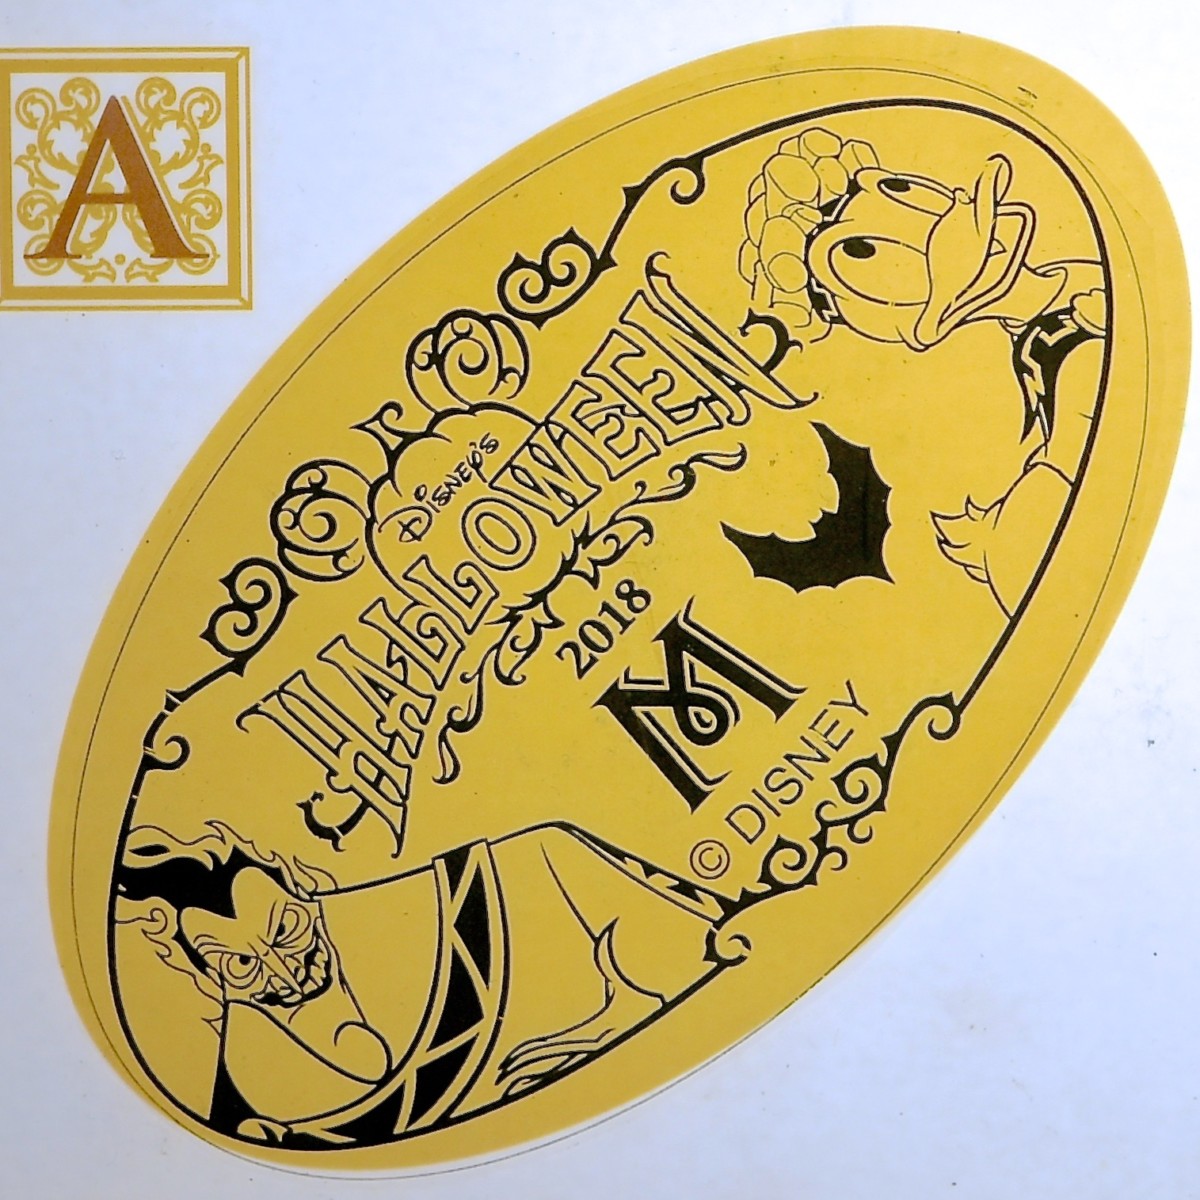 ヴィランズとミッキーたちのペアデザイン 東京ディズニーシー ディズニー ハロウィーン18 スーベニアメダル